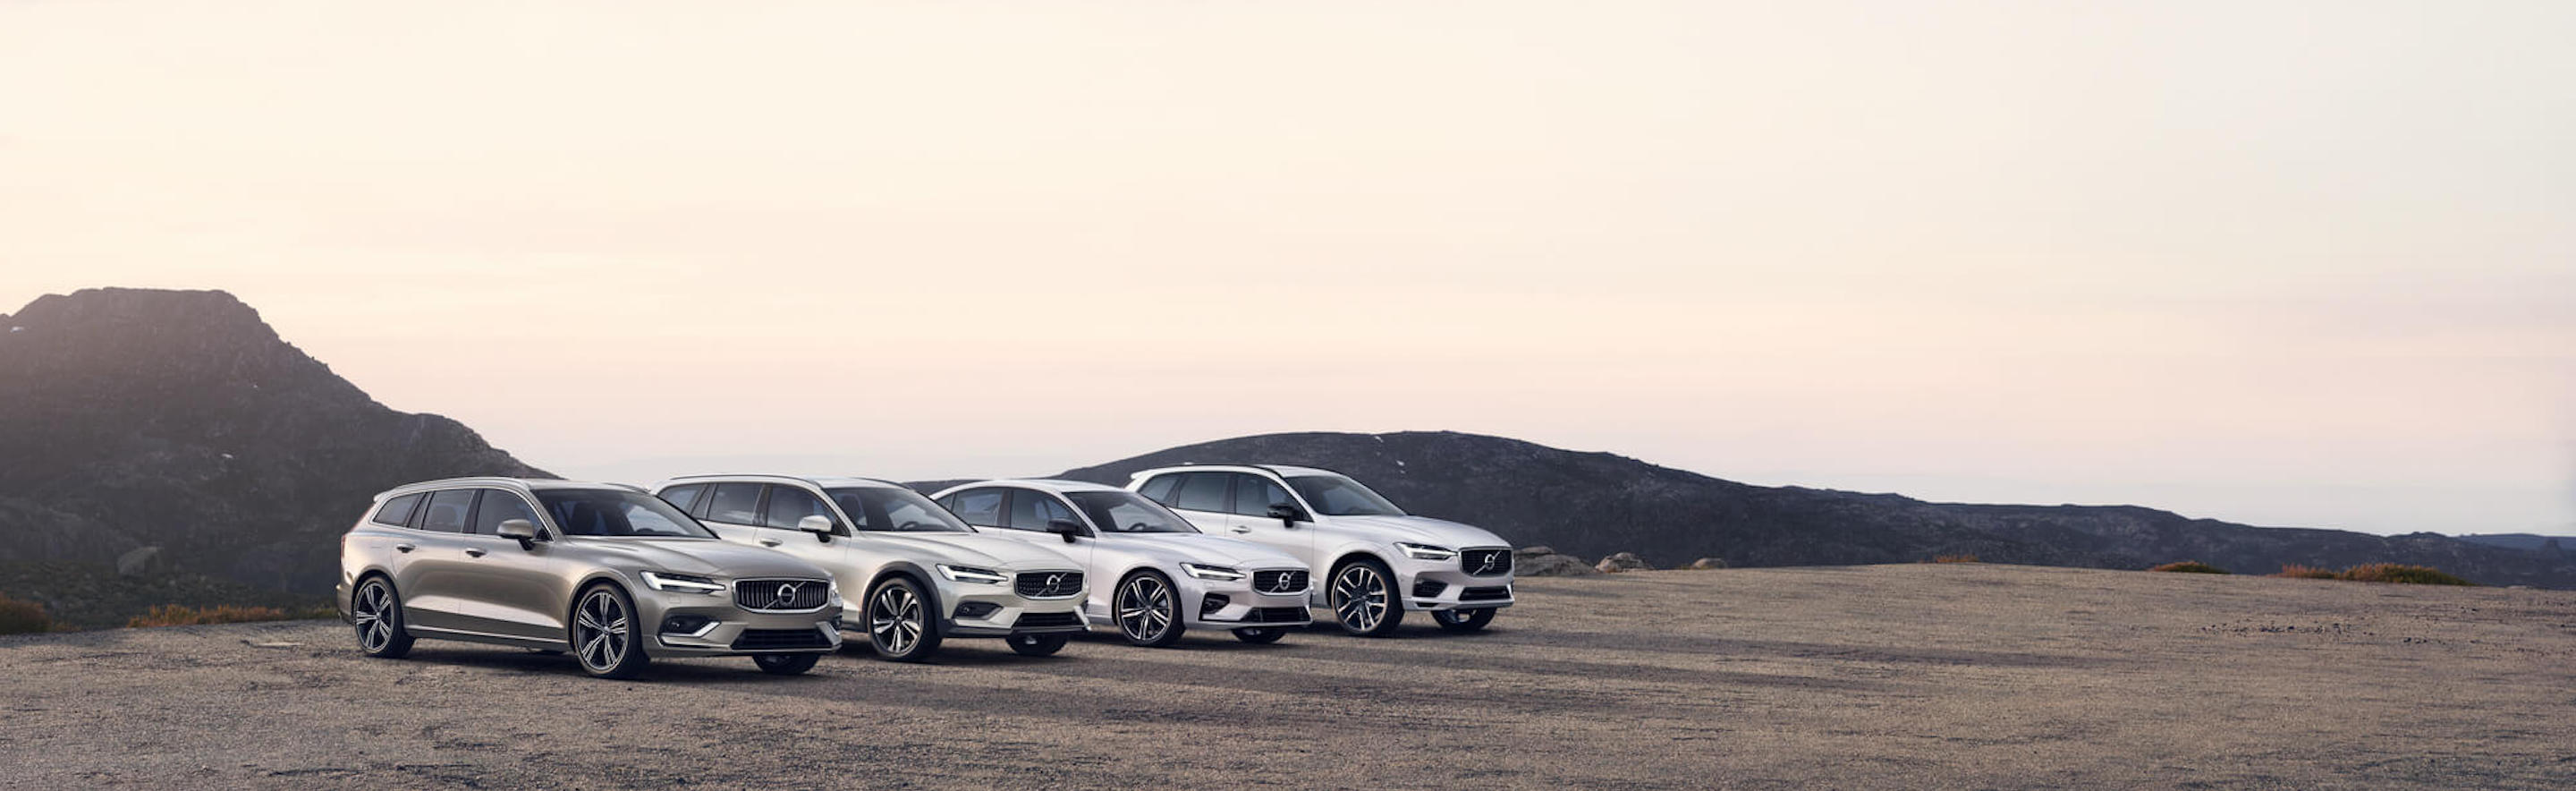 Aufnahme der 60er Range: Volvo V60, Volvo V60 Cross Country, Volvo S60 und Volvo XC60 stehen nebeneinander auf einer Klippe